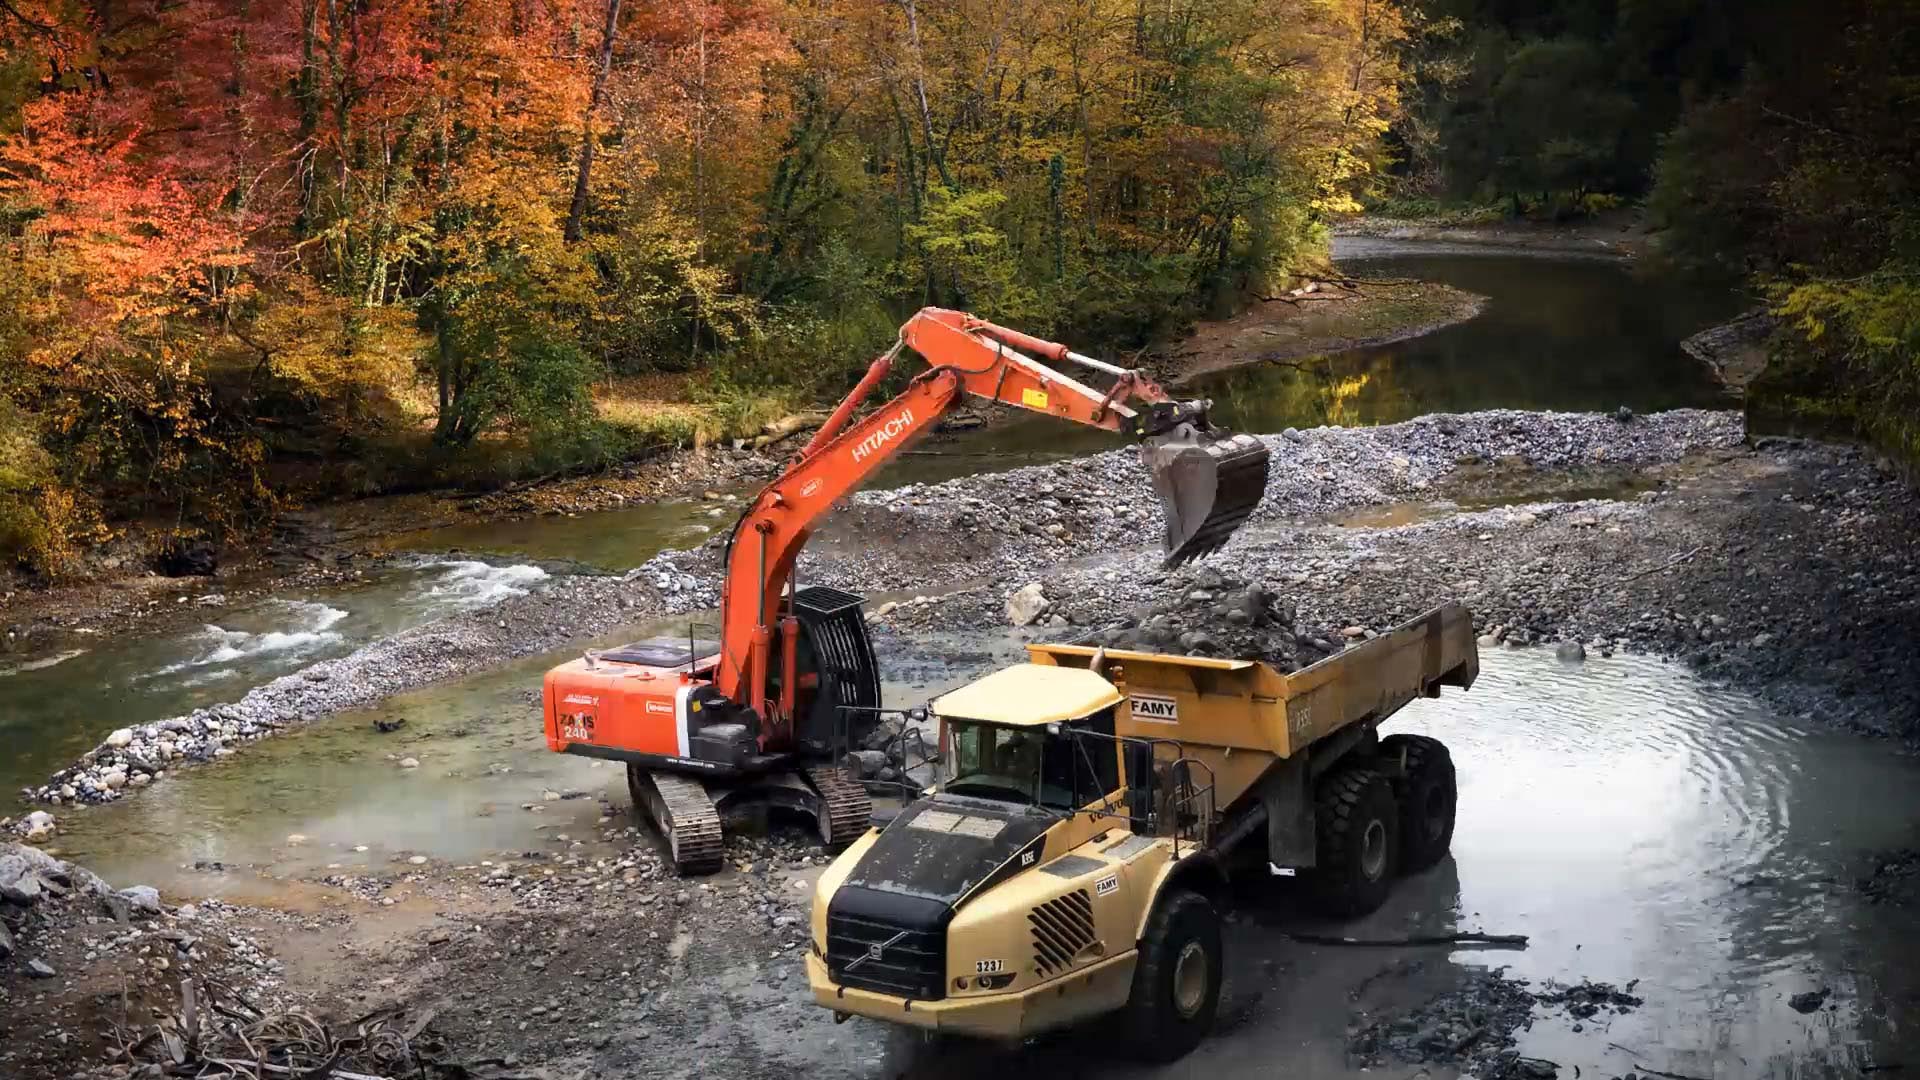 Travaux de restauration De La Continuité Écologique Du Chéran, pelleteuse et camion au milieu d'un paysage de rivière avec pierres nature Arbres Rivière